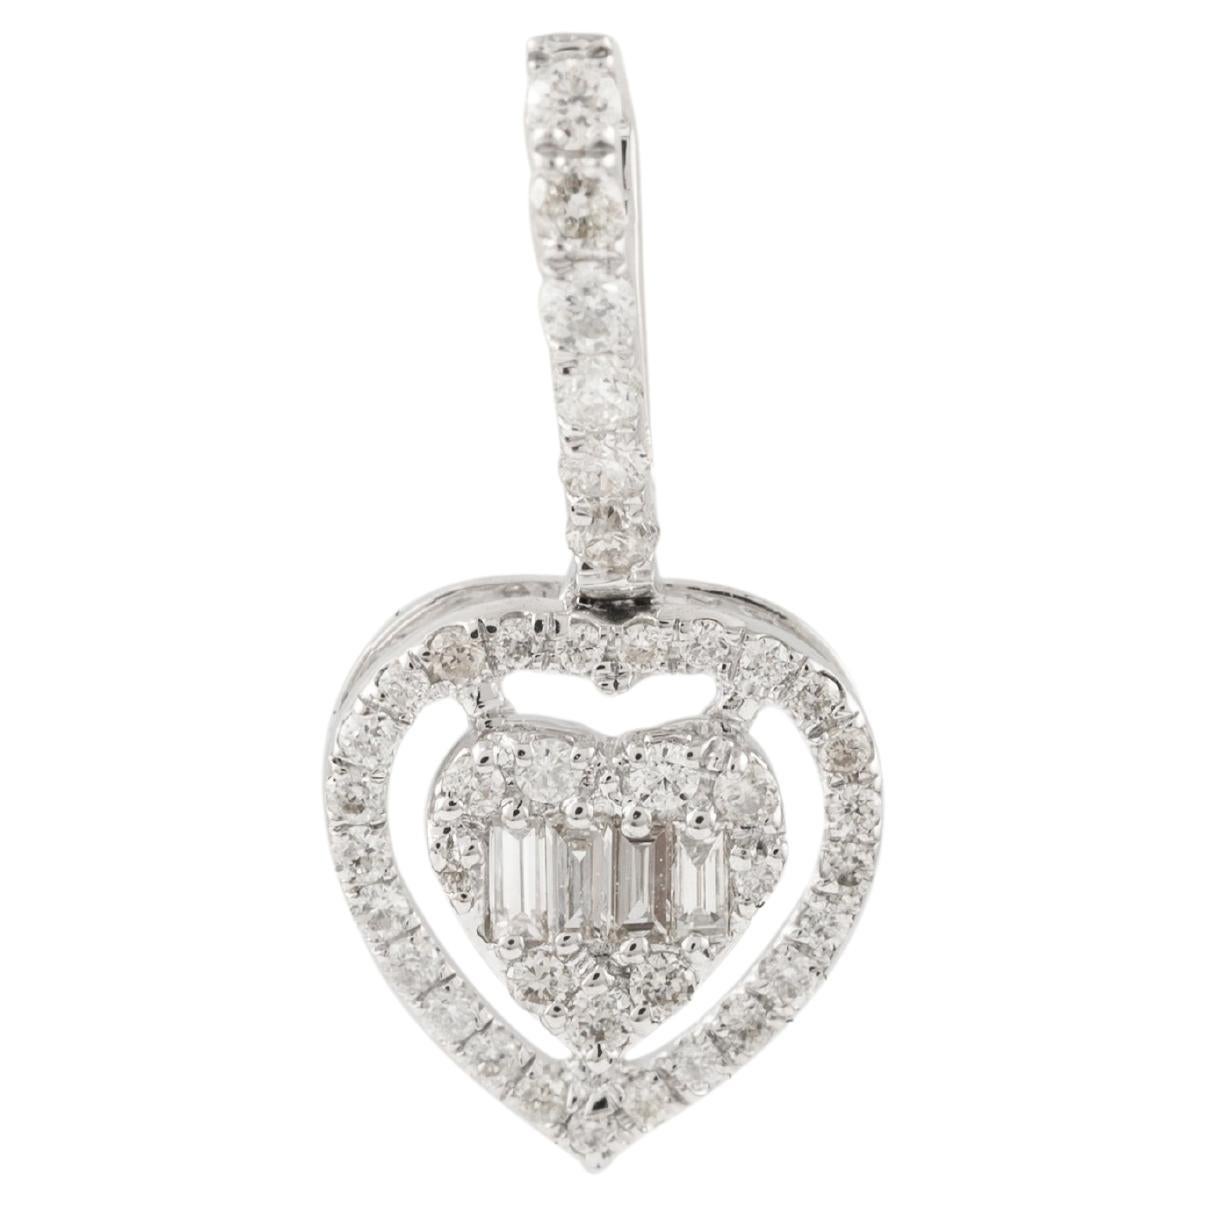 Pendentif cœur en or blanc massif 18 carats, bijouterie d'art pour mariée à offrir